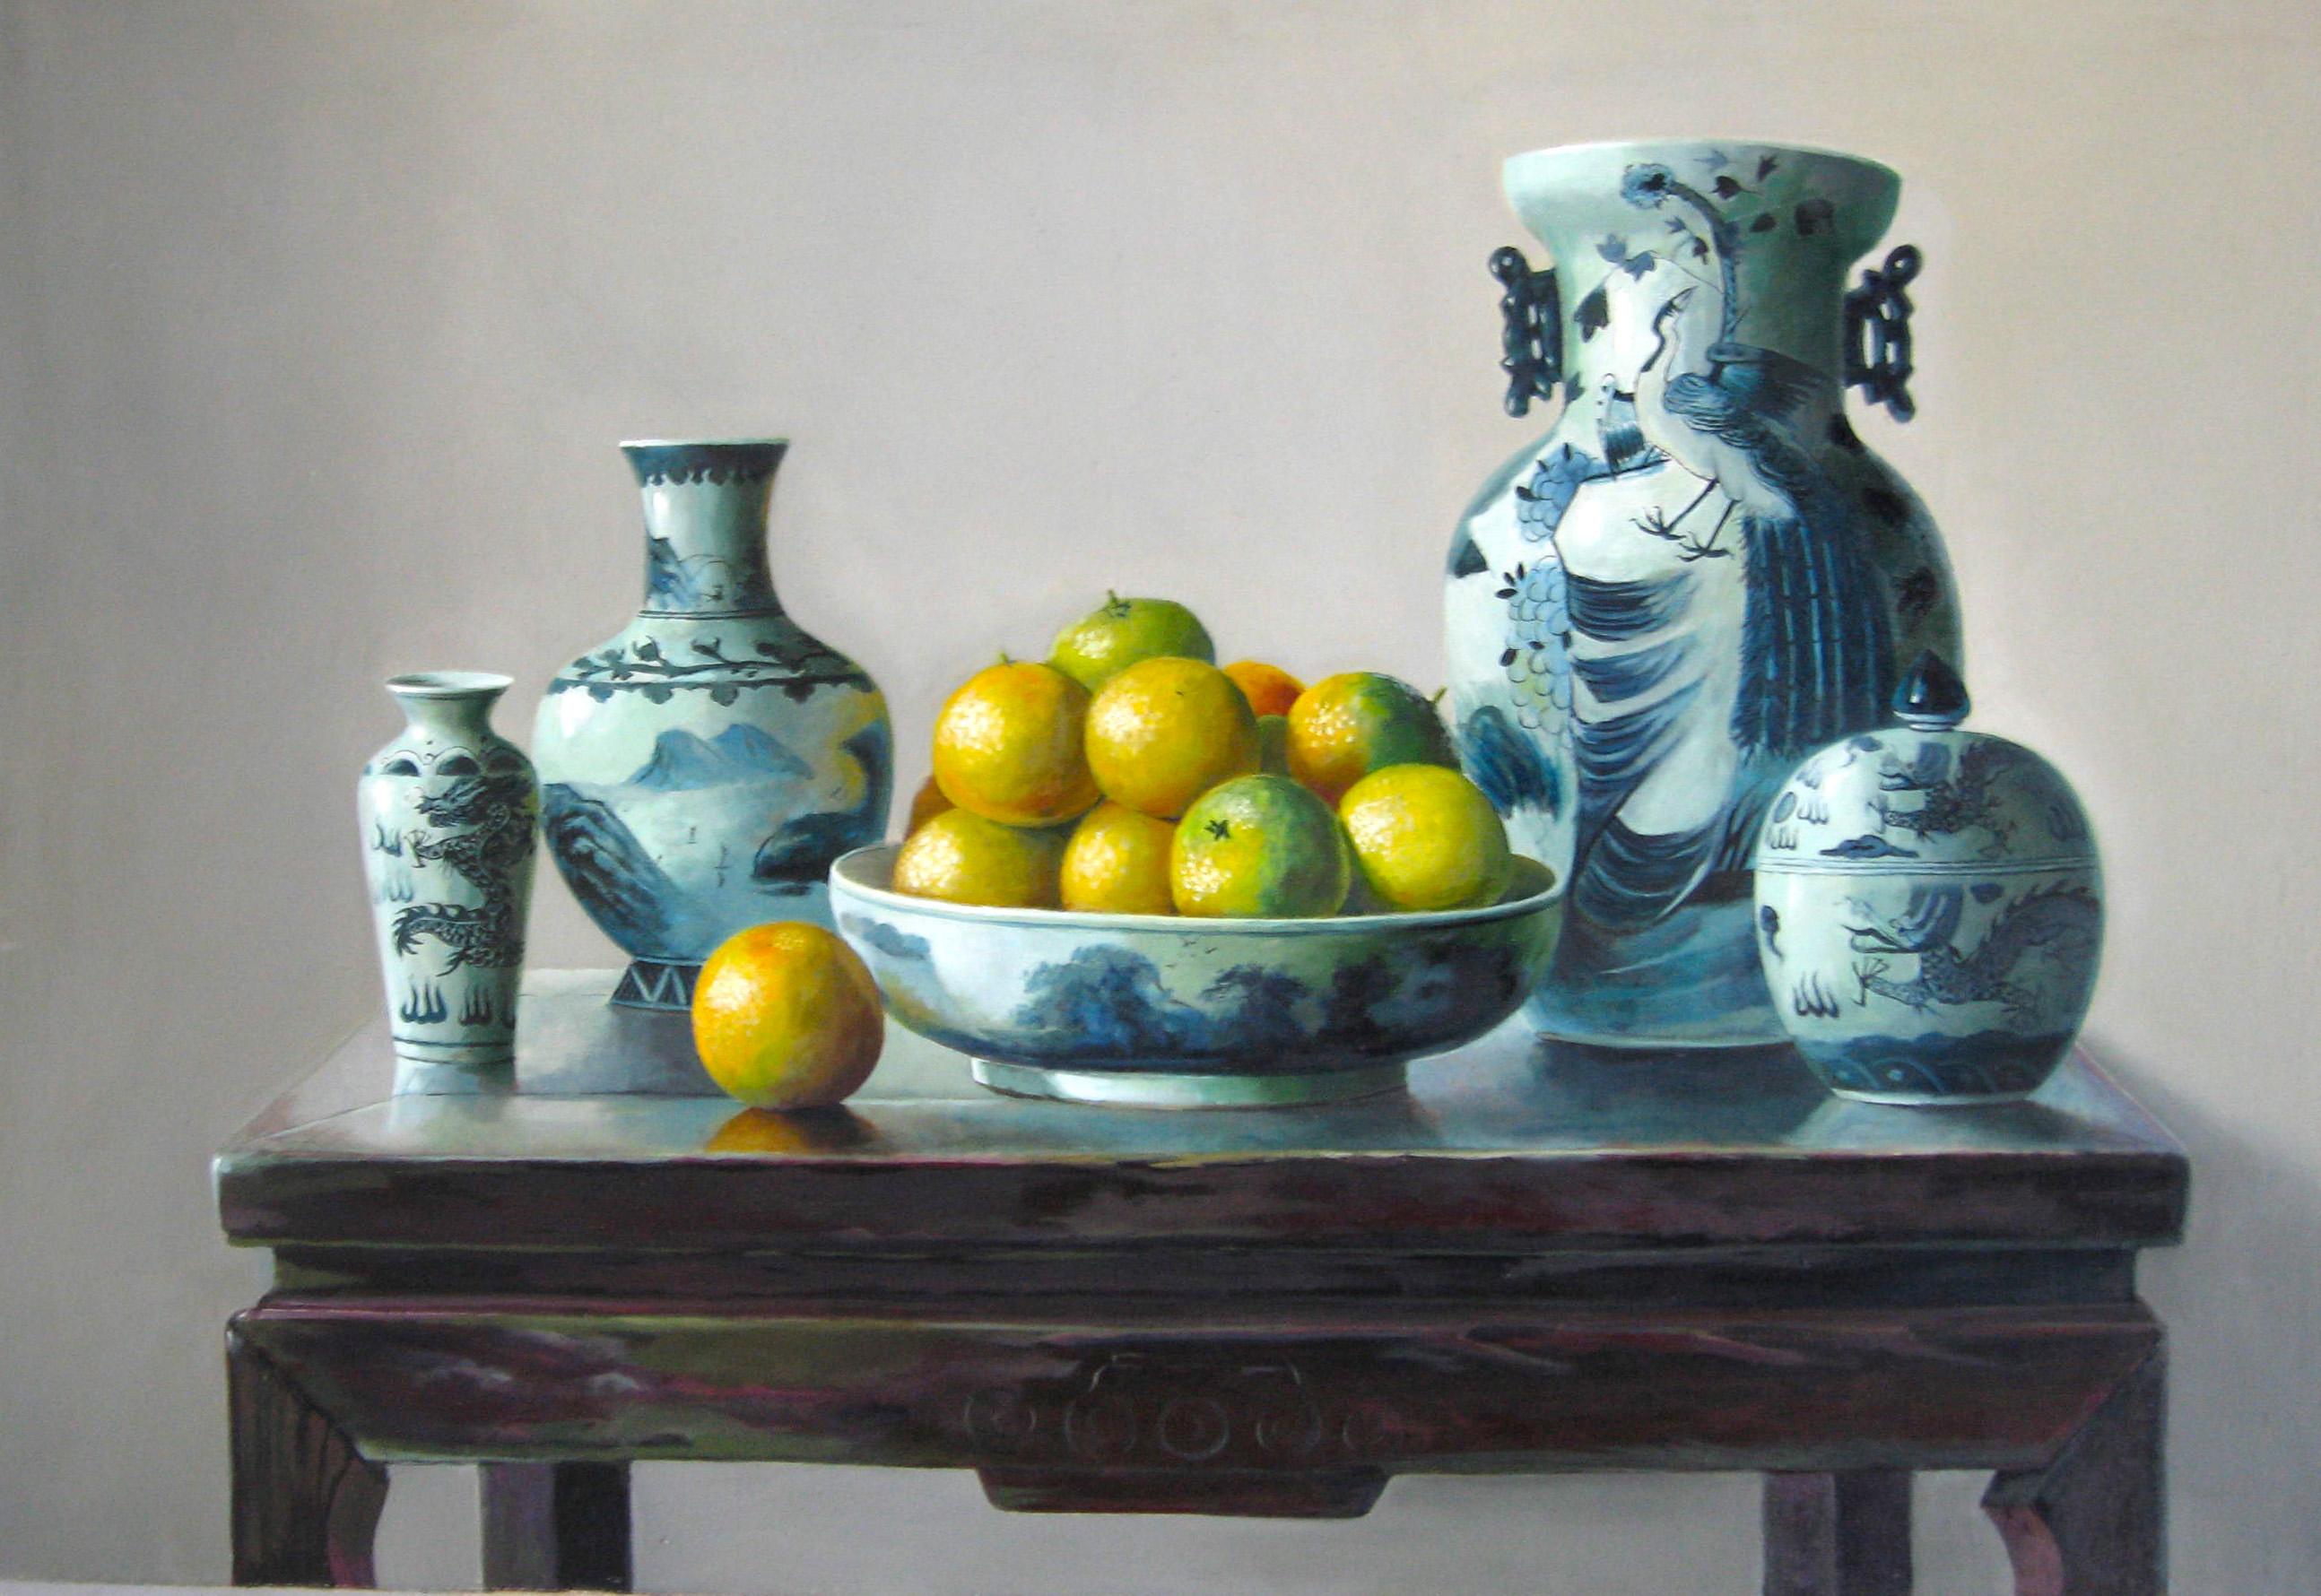 Orangen ist ein Original Öl auf Leinwand des chinesischen Malers Zhang Wei Guang (Mirror) aus dem Jahr 1998.
Ausgezeichnete Bedingungen.

Zhang Wei Guang , auch "Spiegel" genannt, wurde 1968 in Helong Jang, China, geboren. Er studierte an der